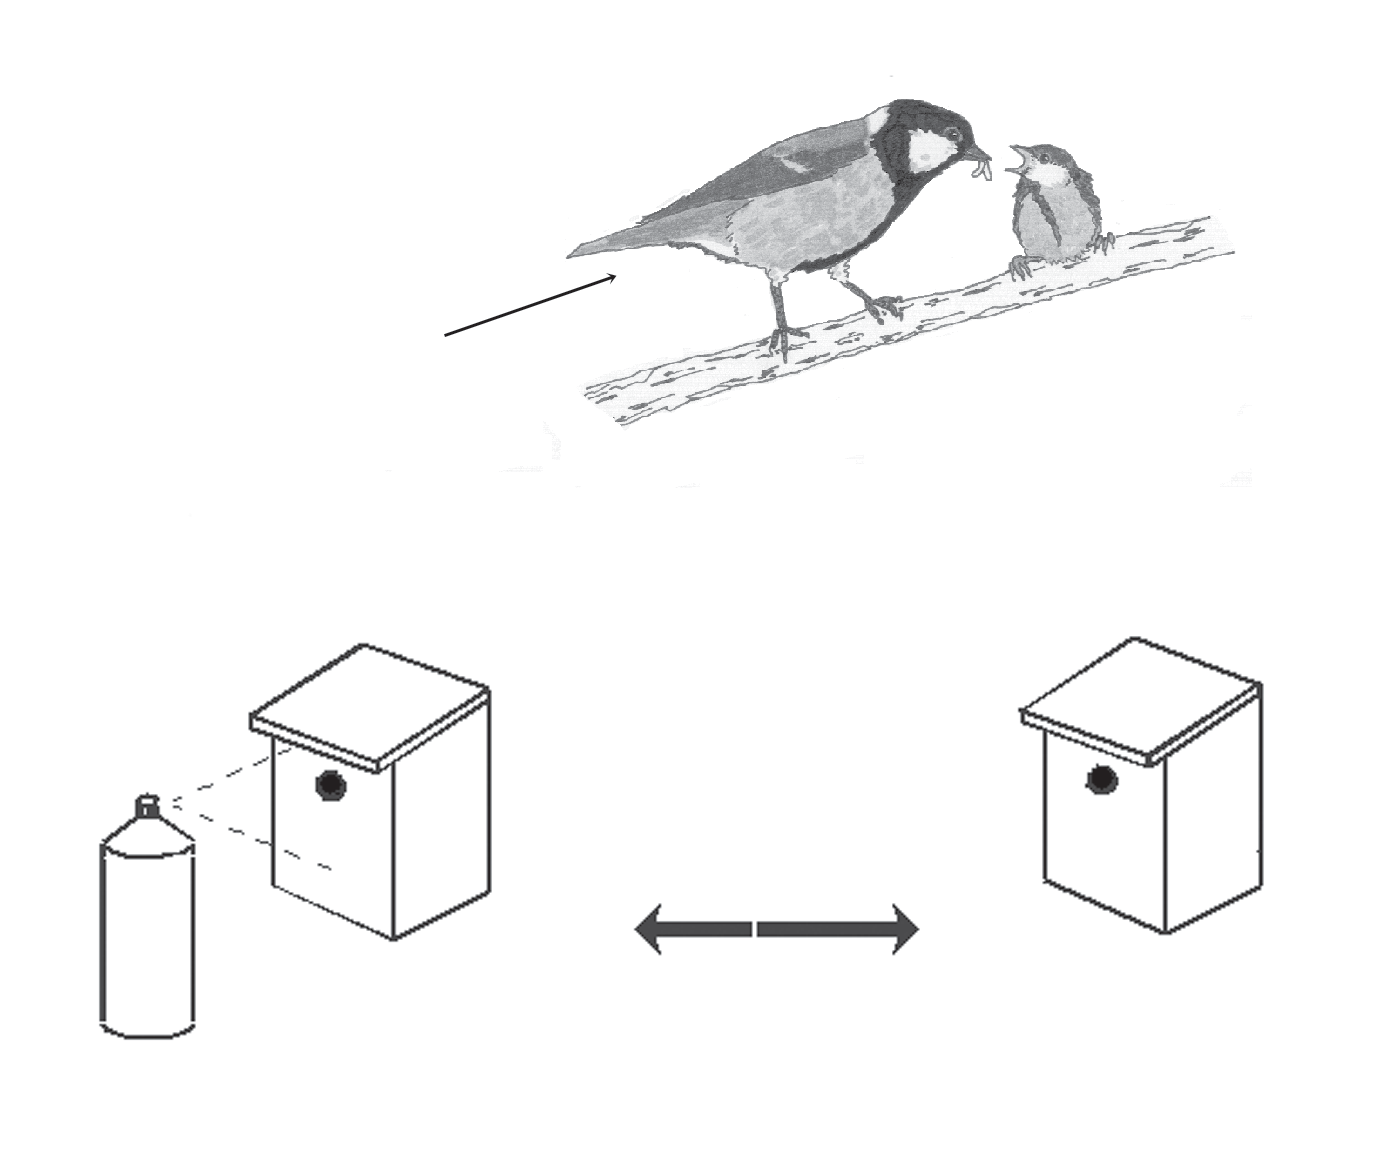 2. Introducción al método científico 43 La utilización de cajas nido control permite conocer el efecto del grado de parasitación de las cajas nido sobre el amarillo de los pollos Especie de estudio: